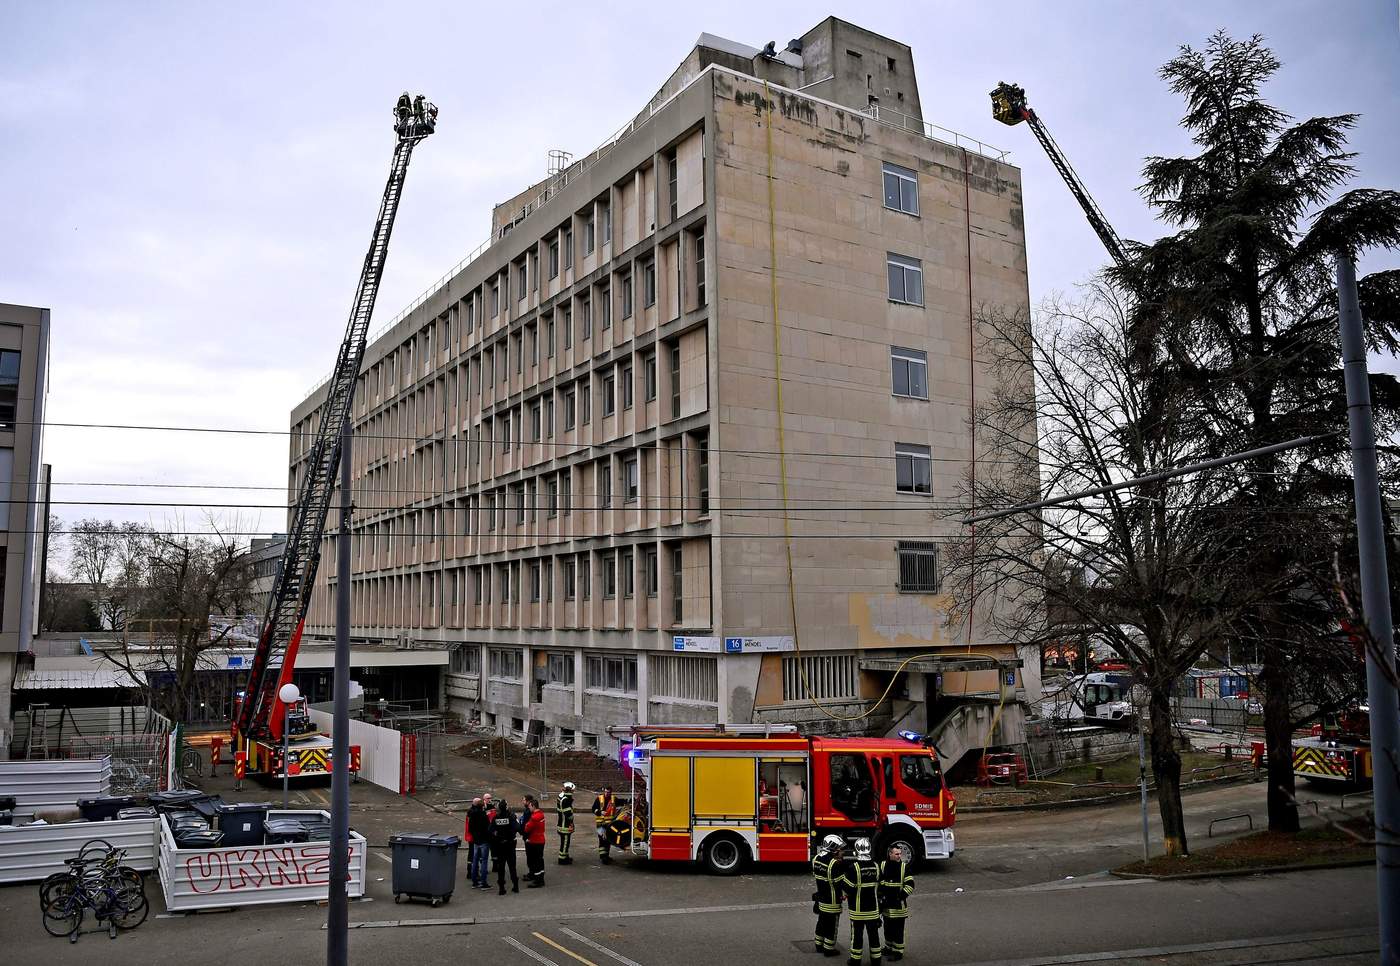 La universidad de la ciudad francesa de Lyon fue evacuada este jueves por la mañana después de que se produjera un violento incendio en el tejado y se escuchara una fuerte explosión. (EFE)